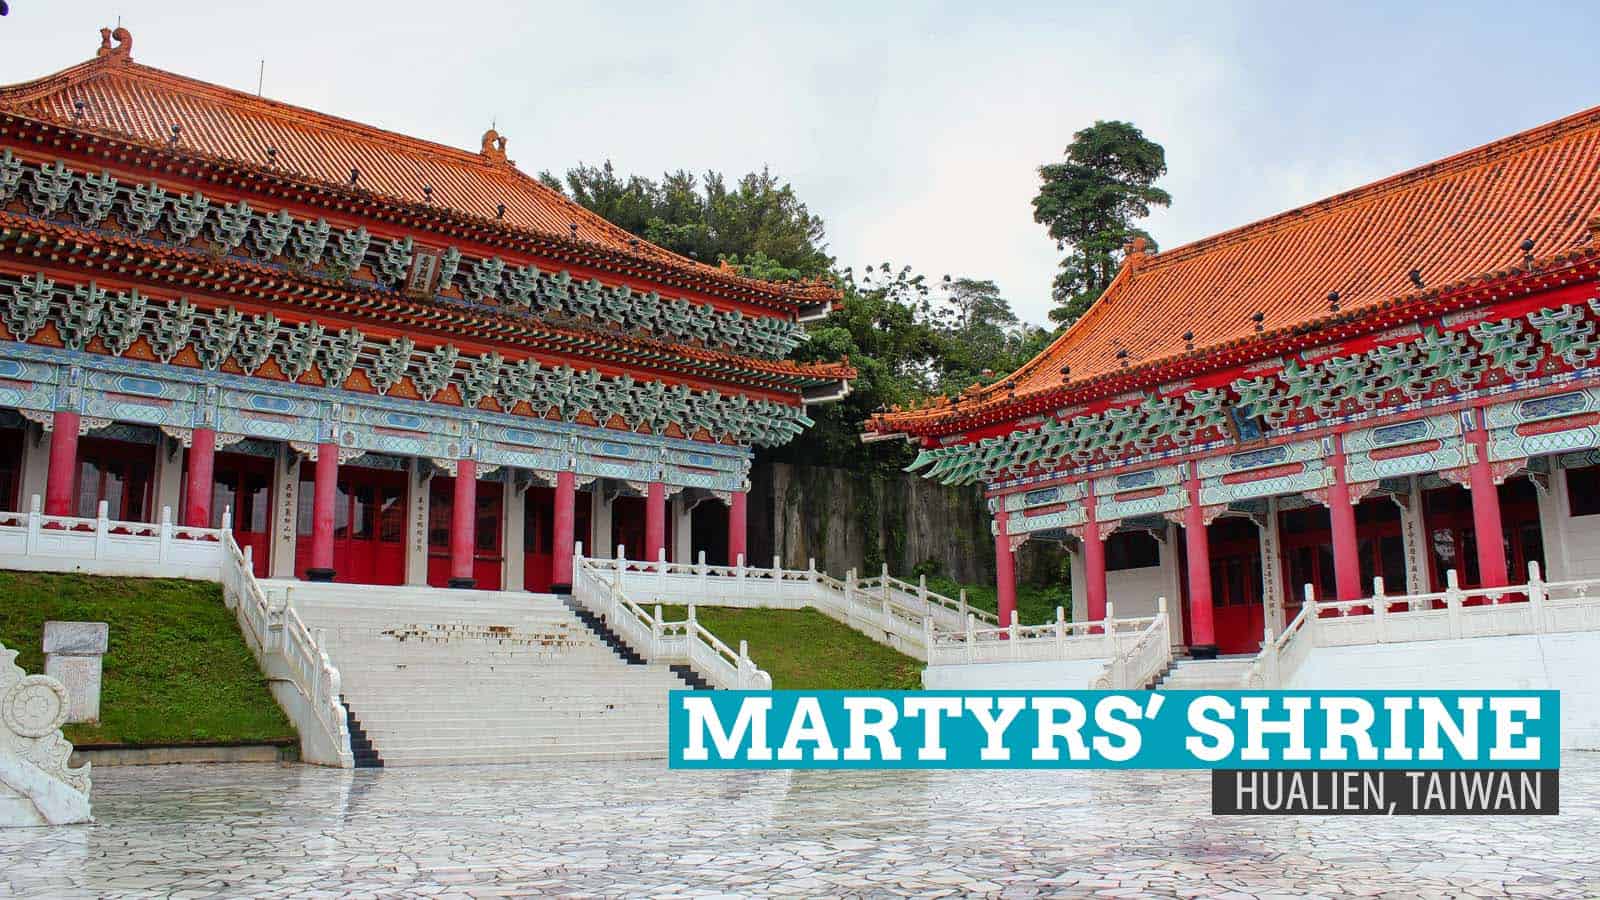 Martyrs’ Shrine: Karenkō Shrine in Hualien, Taiwan